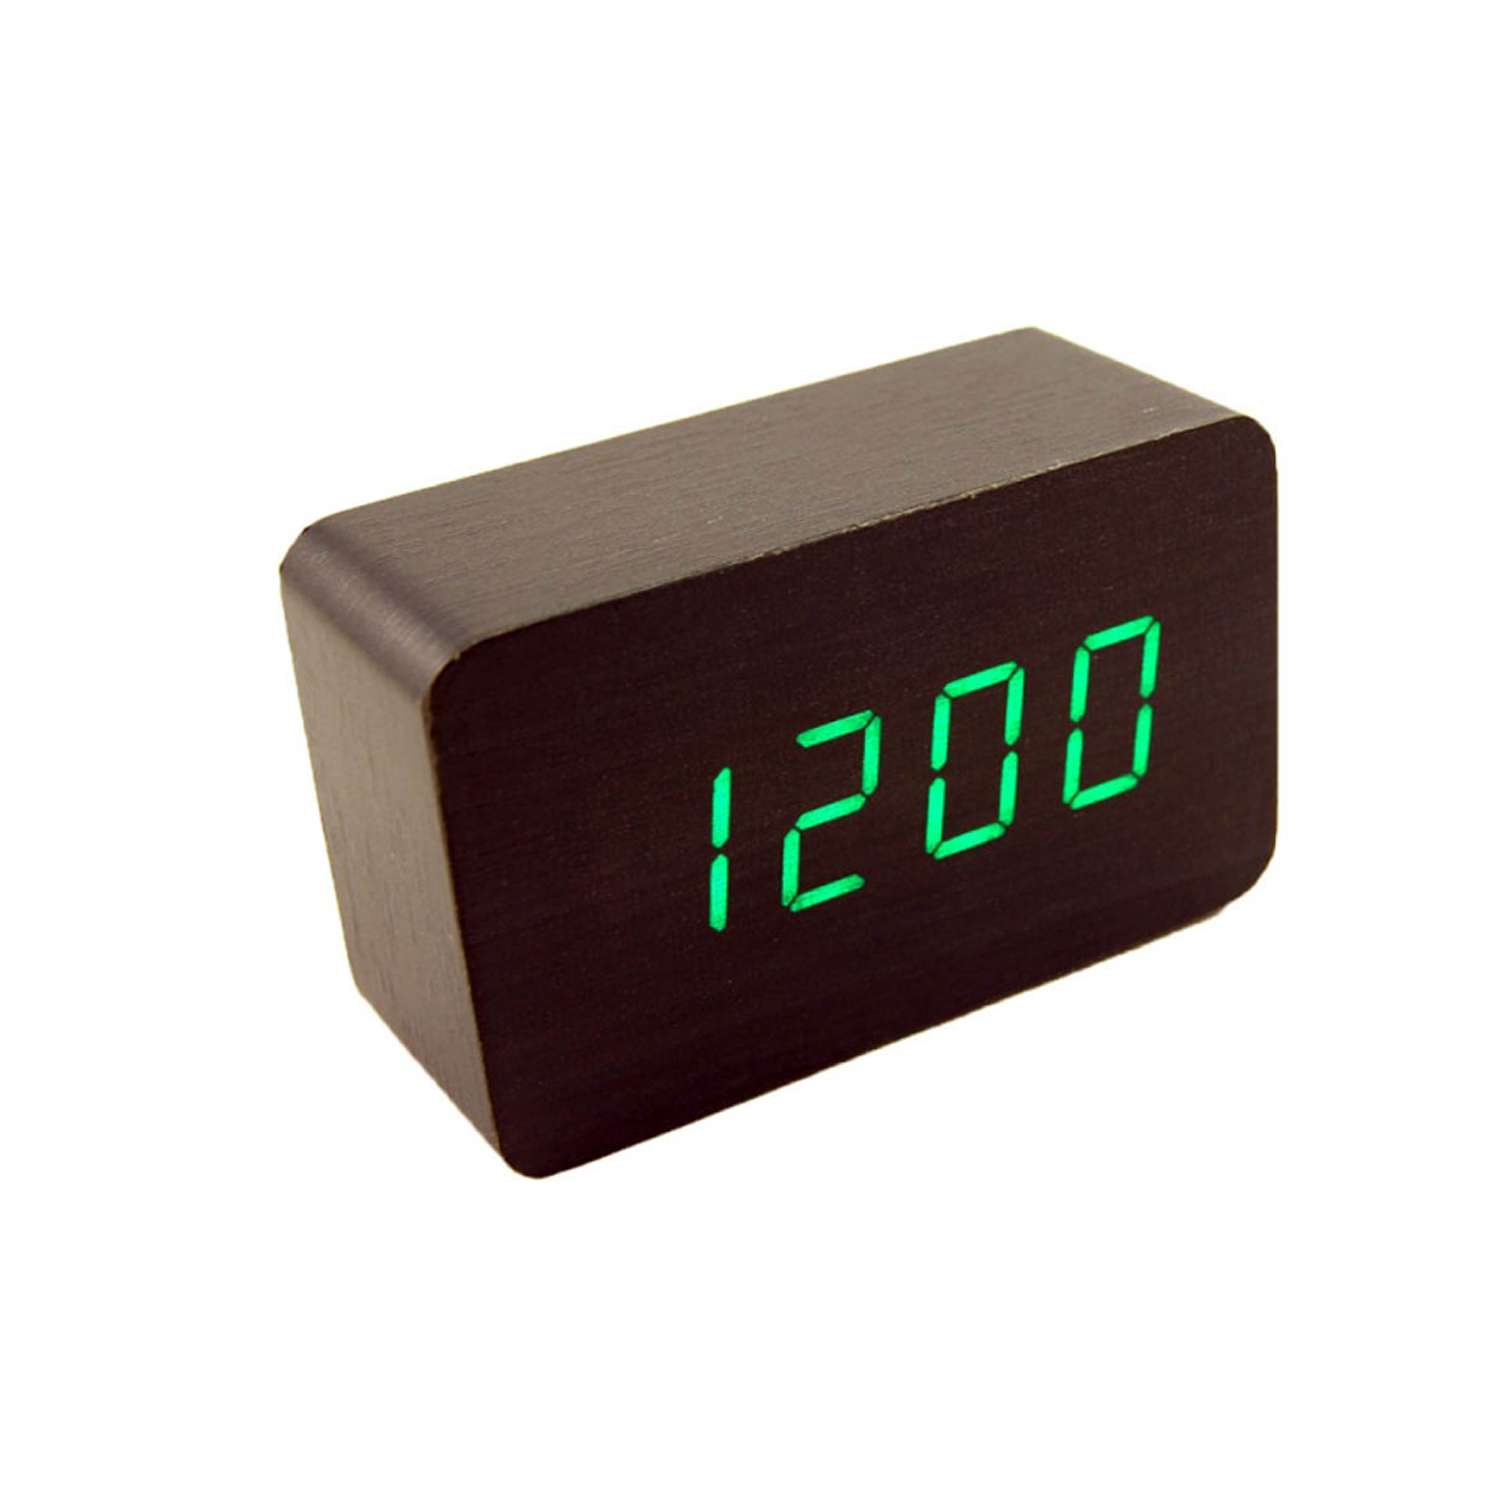 Настольные часы будильник vst. Часы-будильник VST-863. Часы электронные настольные VST-862s. VST-863. VST-805s.